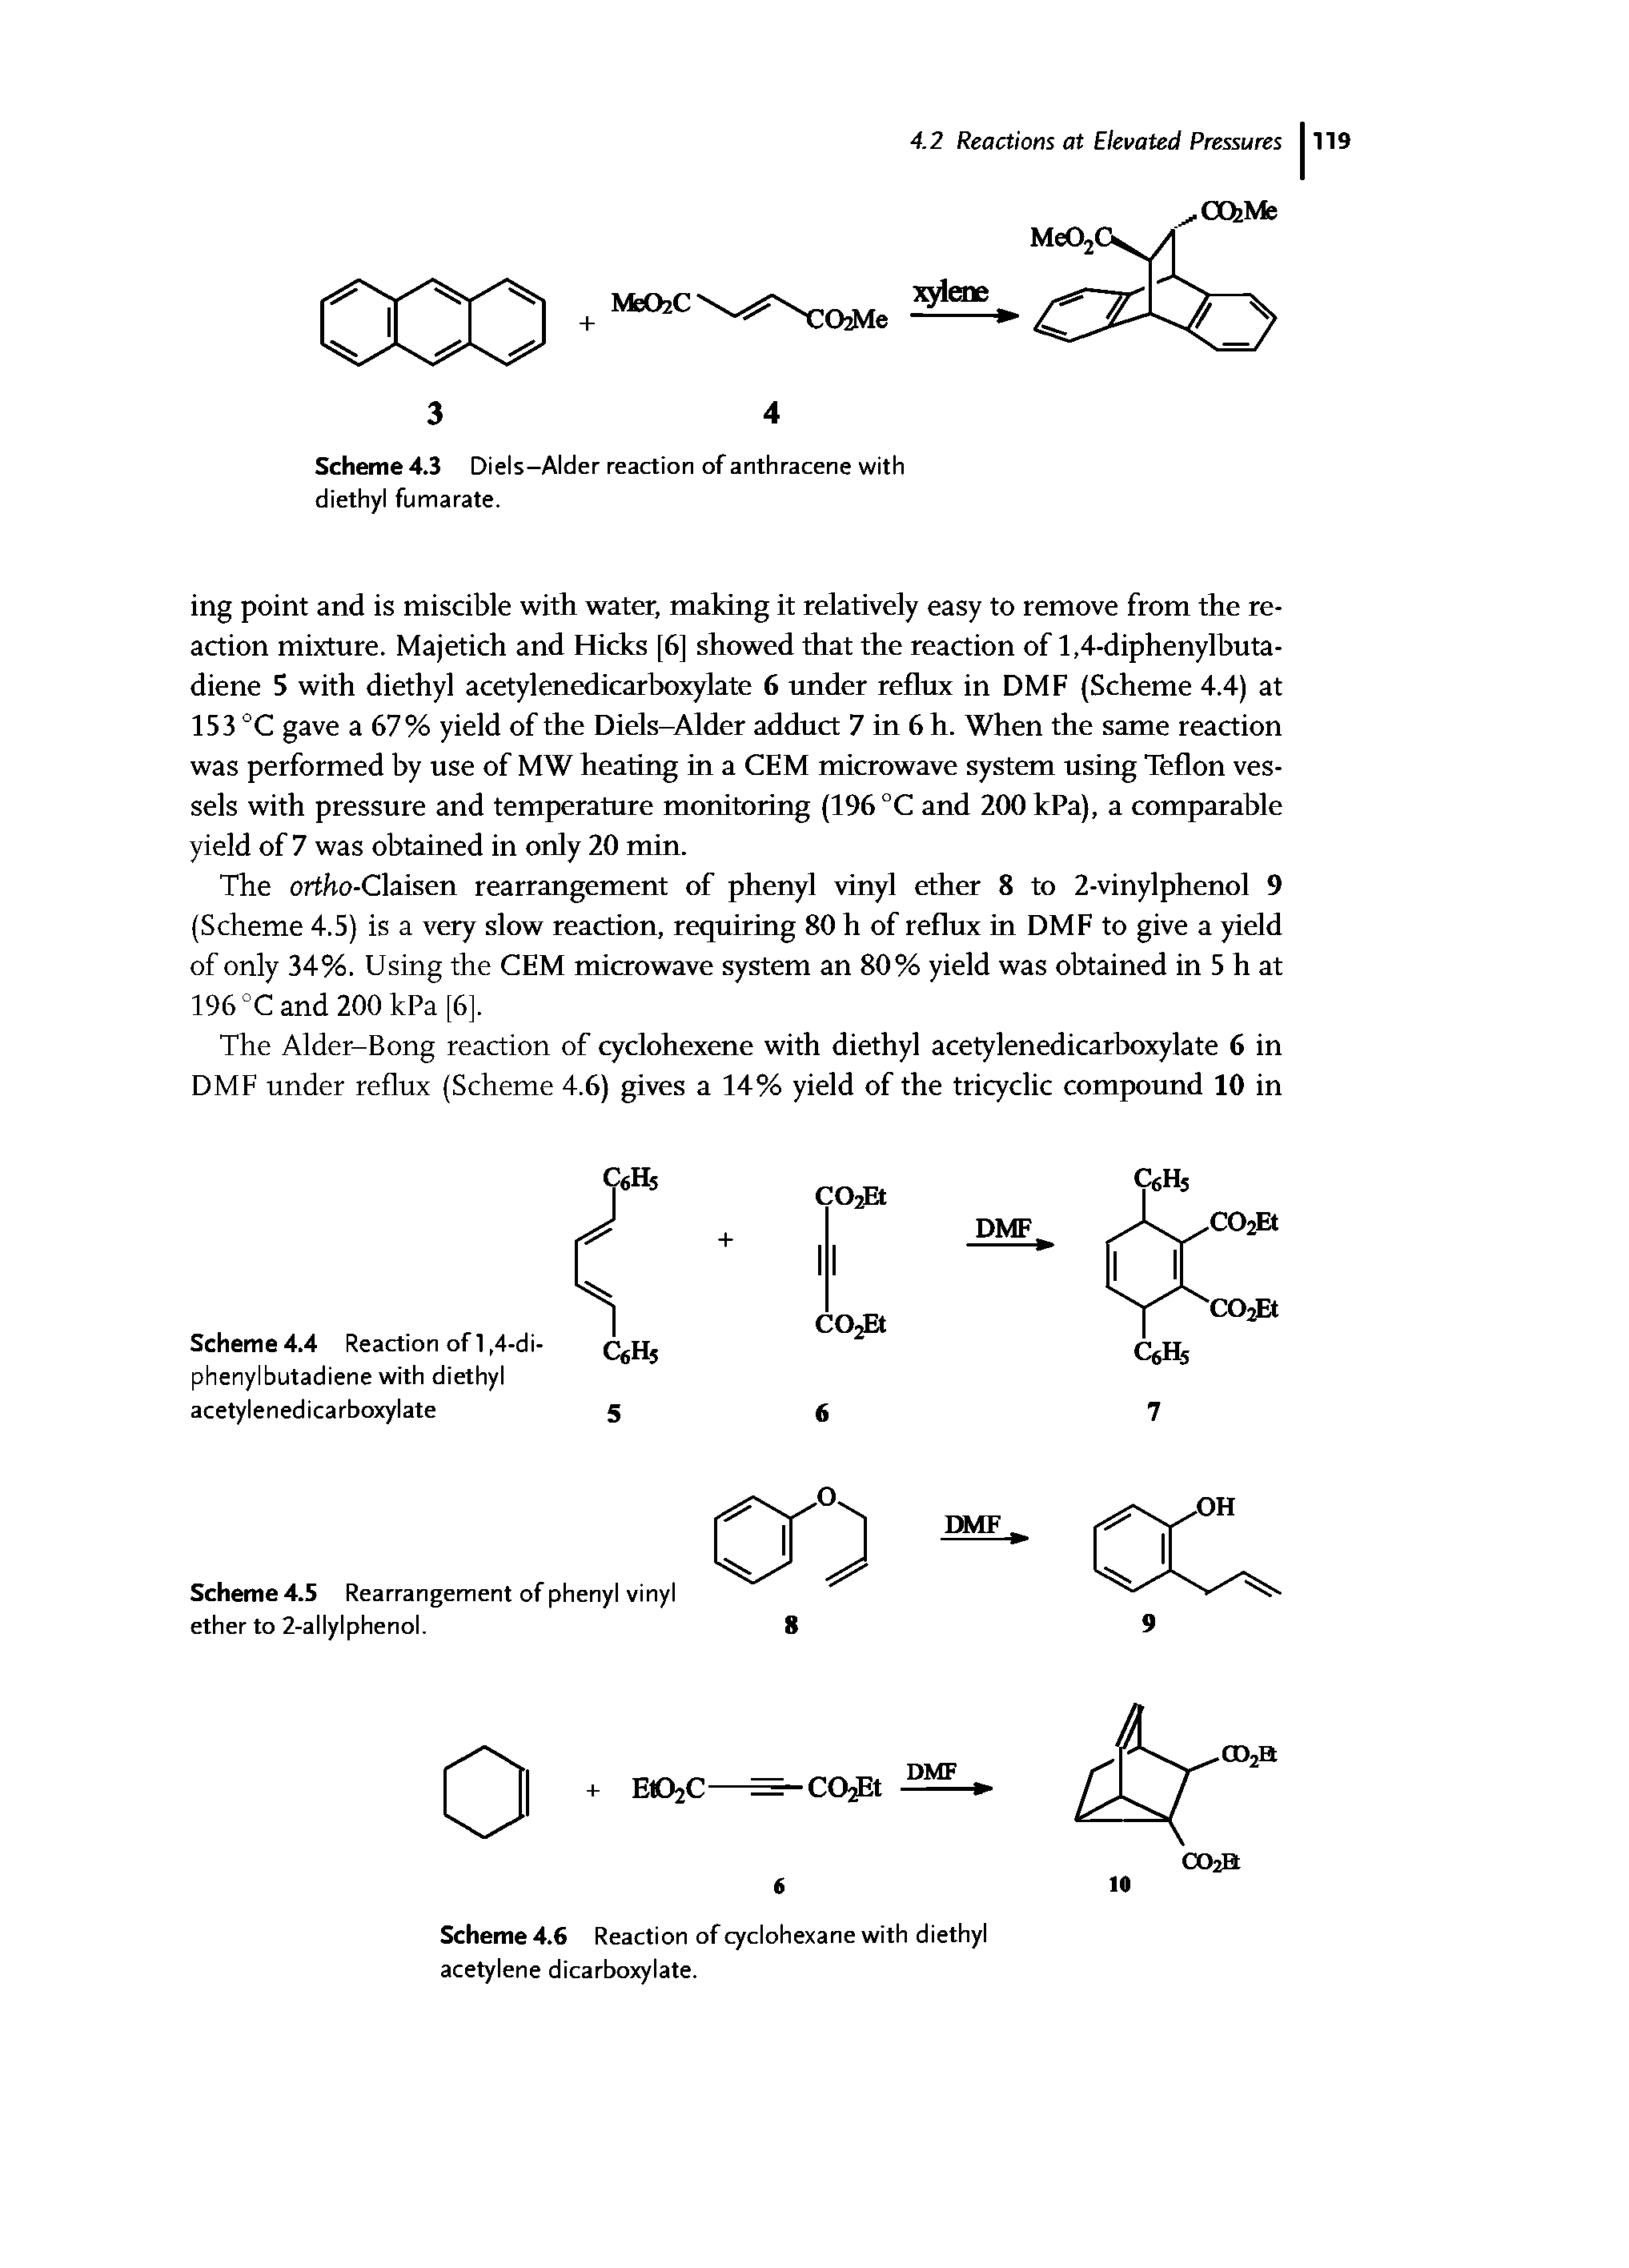 Scheme 4.3 Diels—Alder reaction of anthracene with diethyl fumarate.